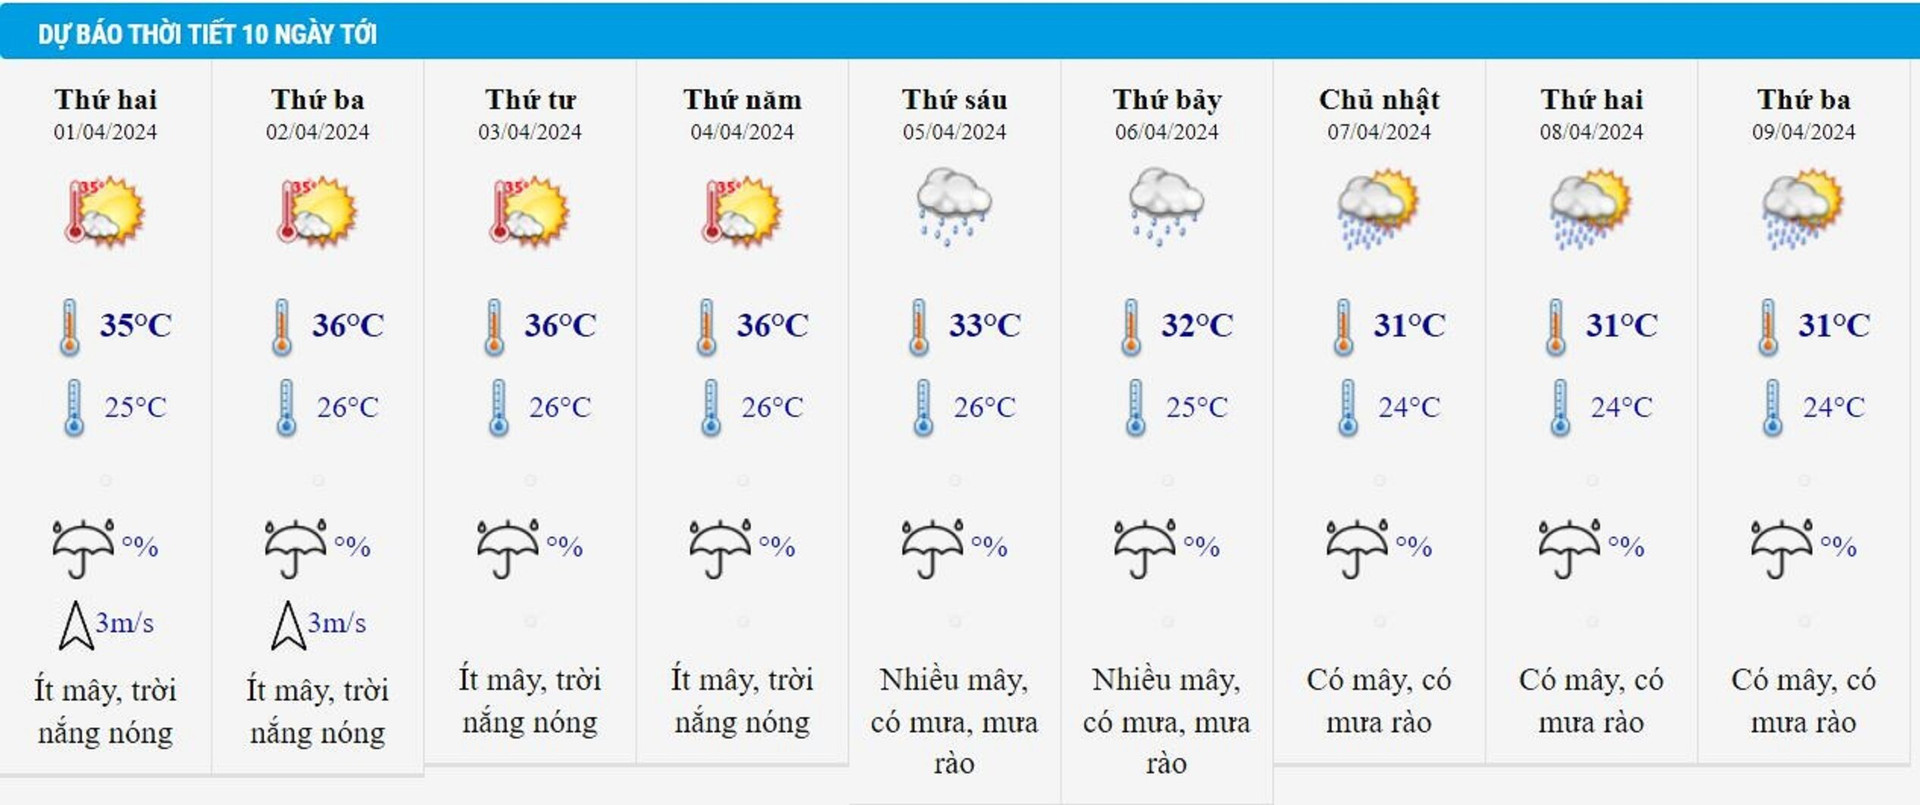 Dự báo thời tiết 10 ngày từ đêm 31/3 đến 9/4 cho Hà Nội và cả nước - 2